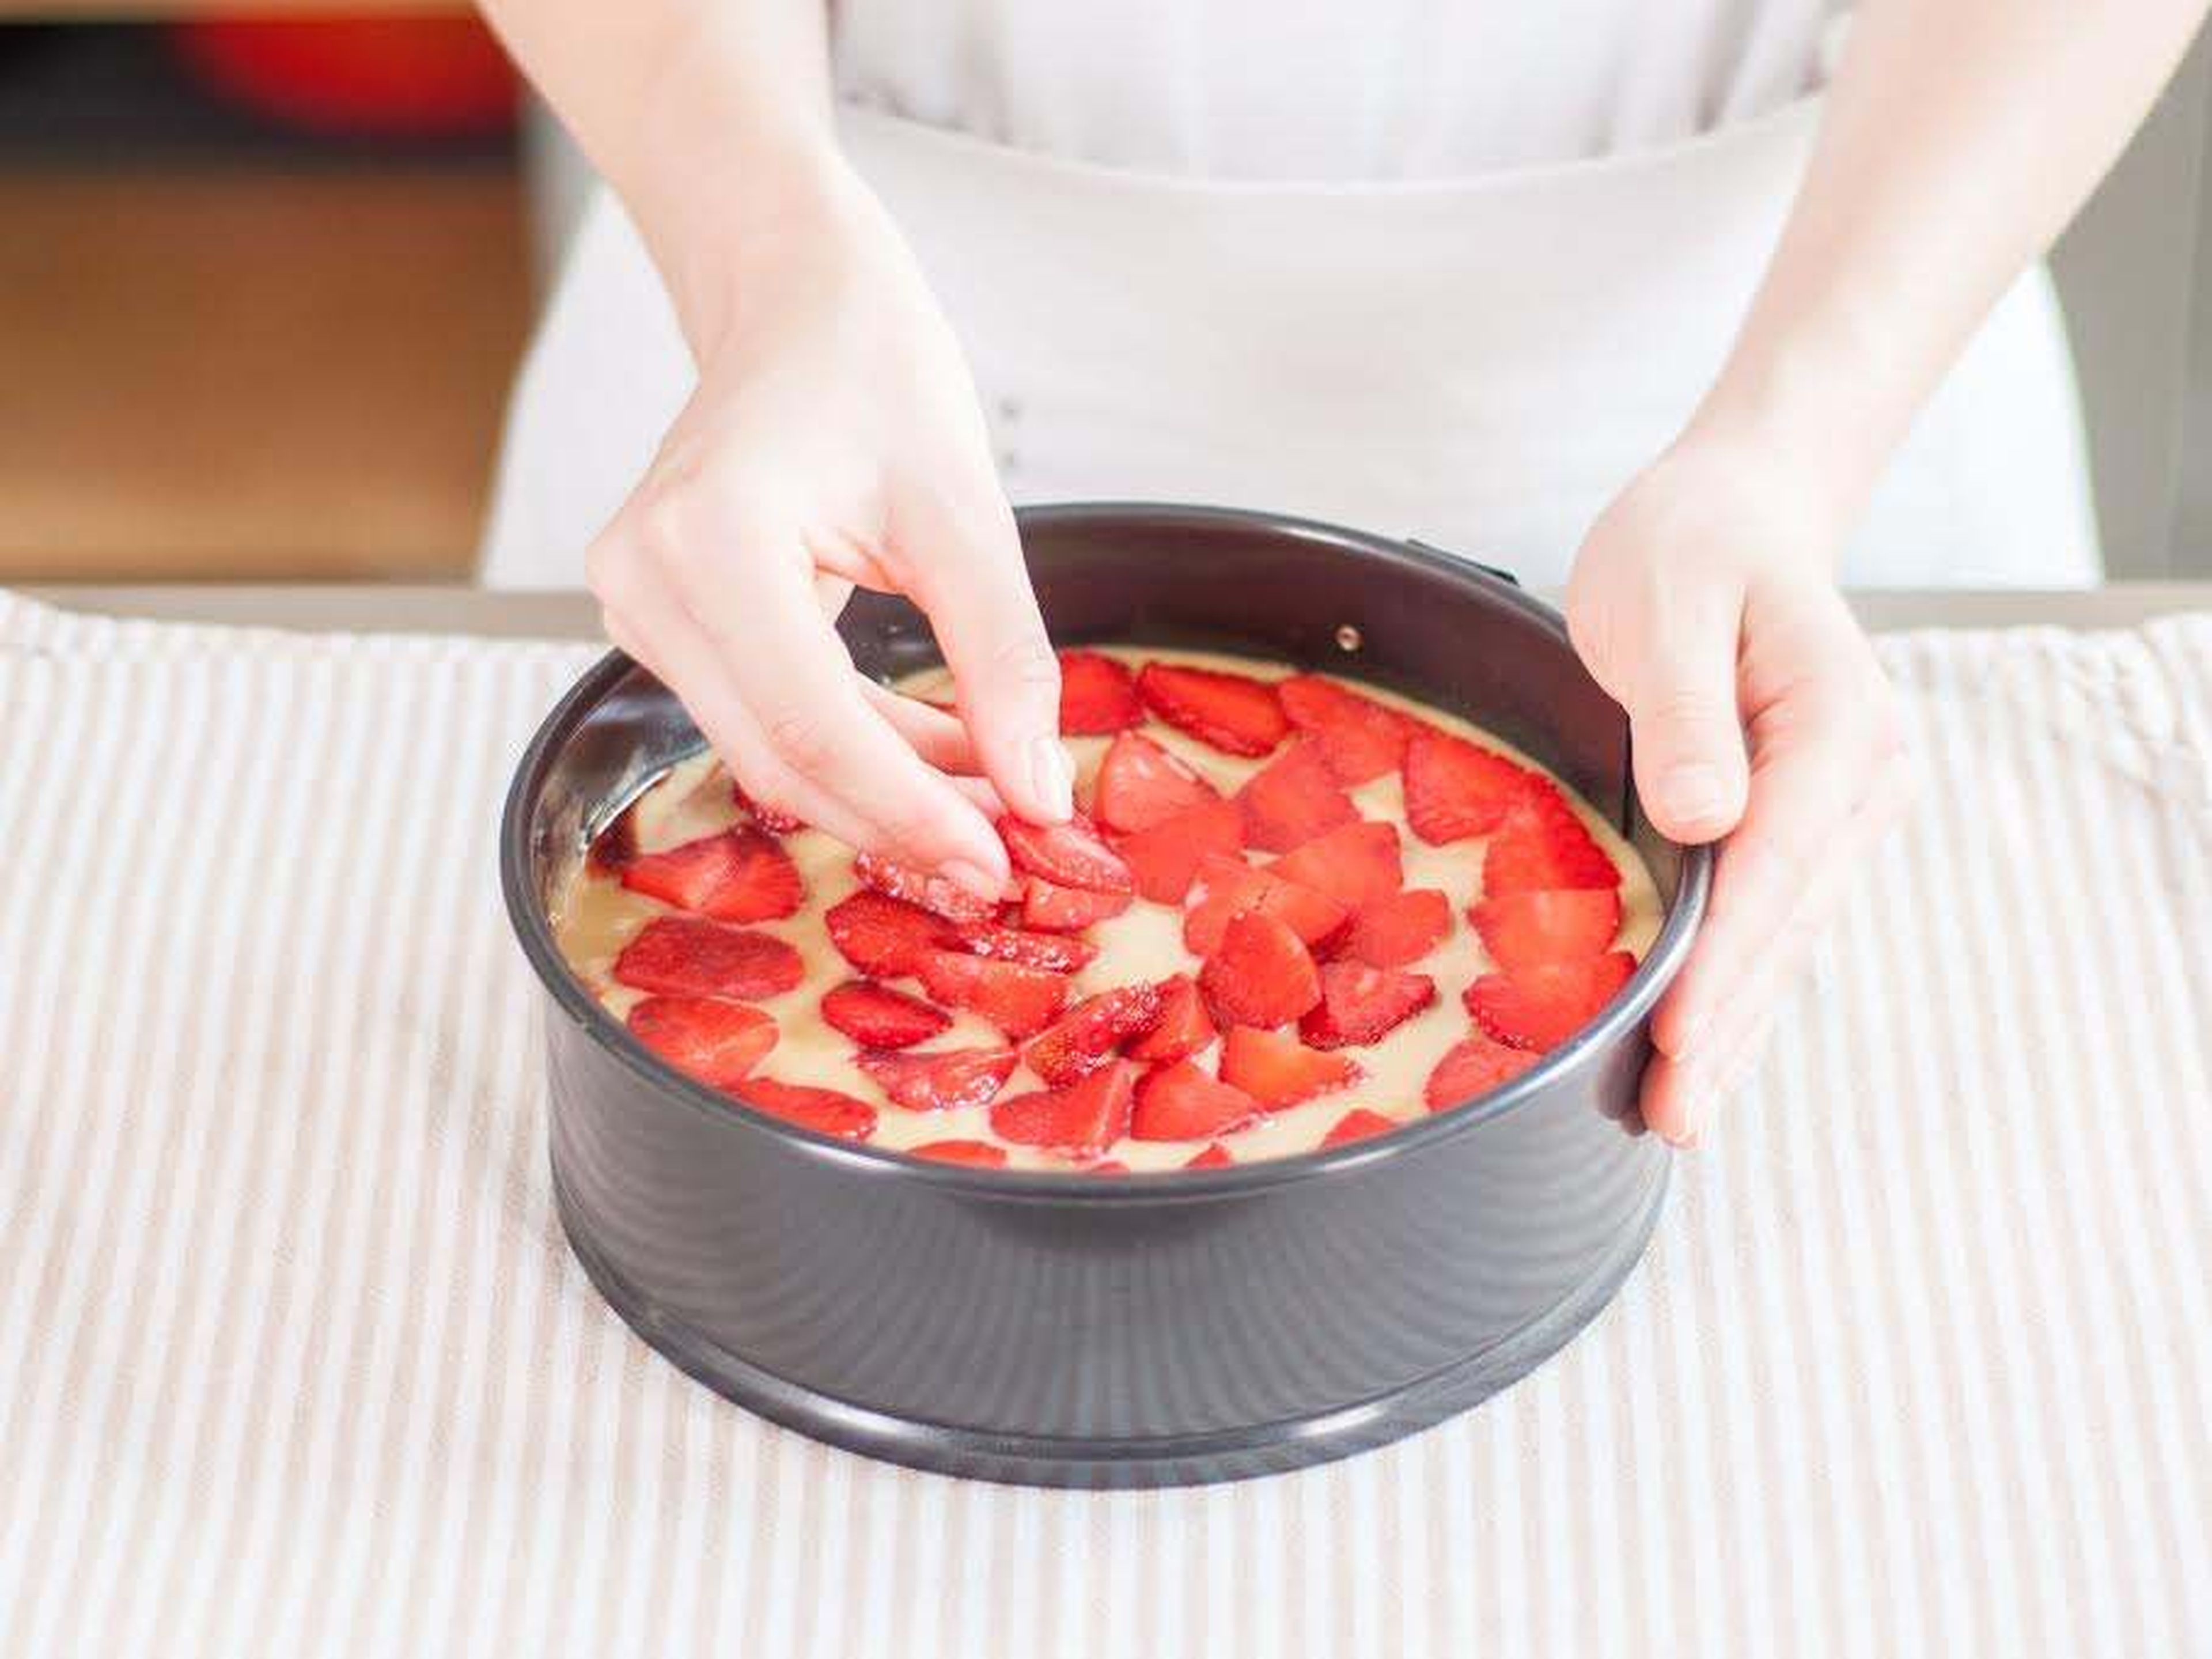 Den restlichen Teigs auf den Erdbeeren verteilen. Zum Schluss kreisförmig mit zurückgelegten Erdbeerscheiben belegen. Ca. 45 - 60 Min. bei 175°C backen, bis ein Zahnstocher beim Anstechen ohne Teigreste sauber entnommen werden kann. Guten Appetit!